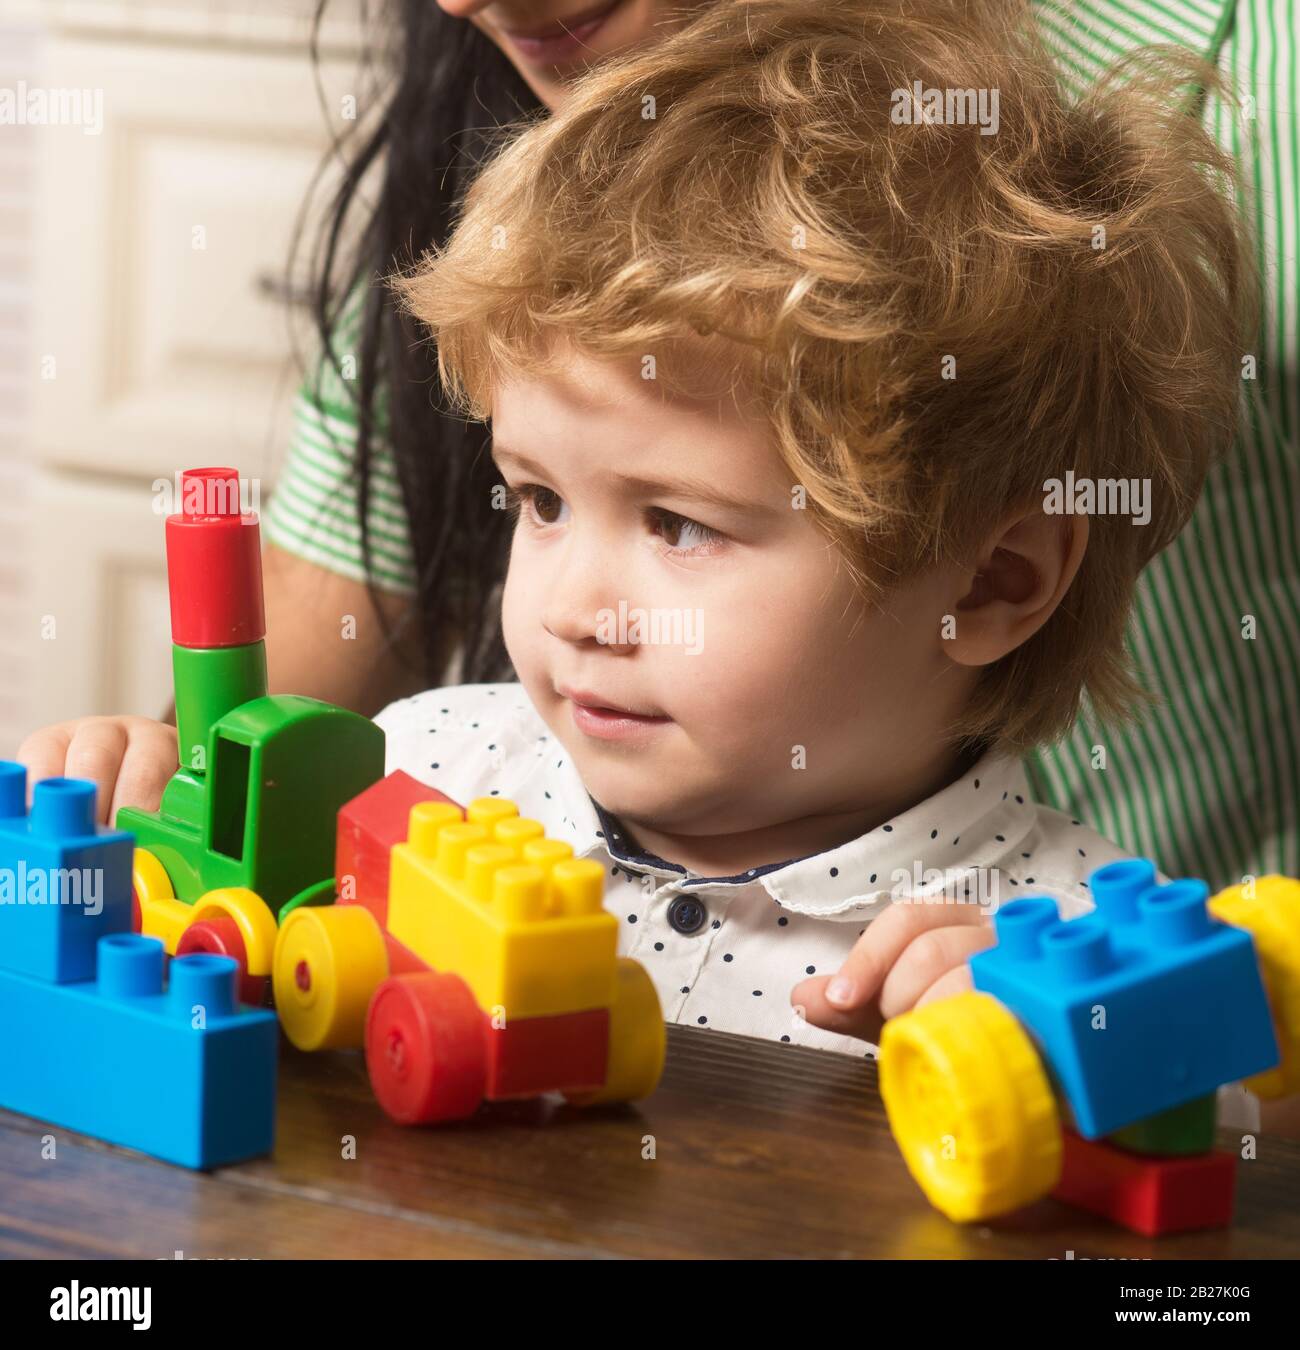 Bébé garçon regarde le train jouet fait de blocs de construction. Les  enfants jouent avec des briques en plastique colorées sur la table. Enfant  près de maman sur fond en bois clair,